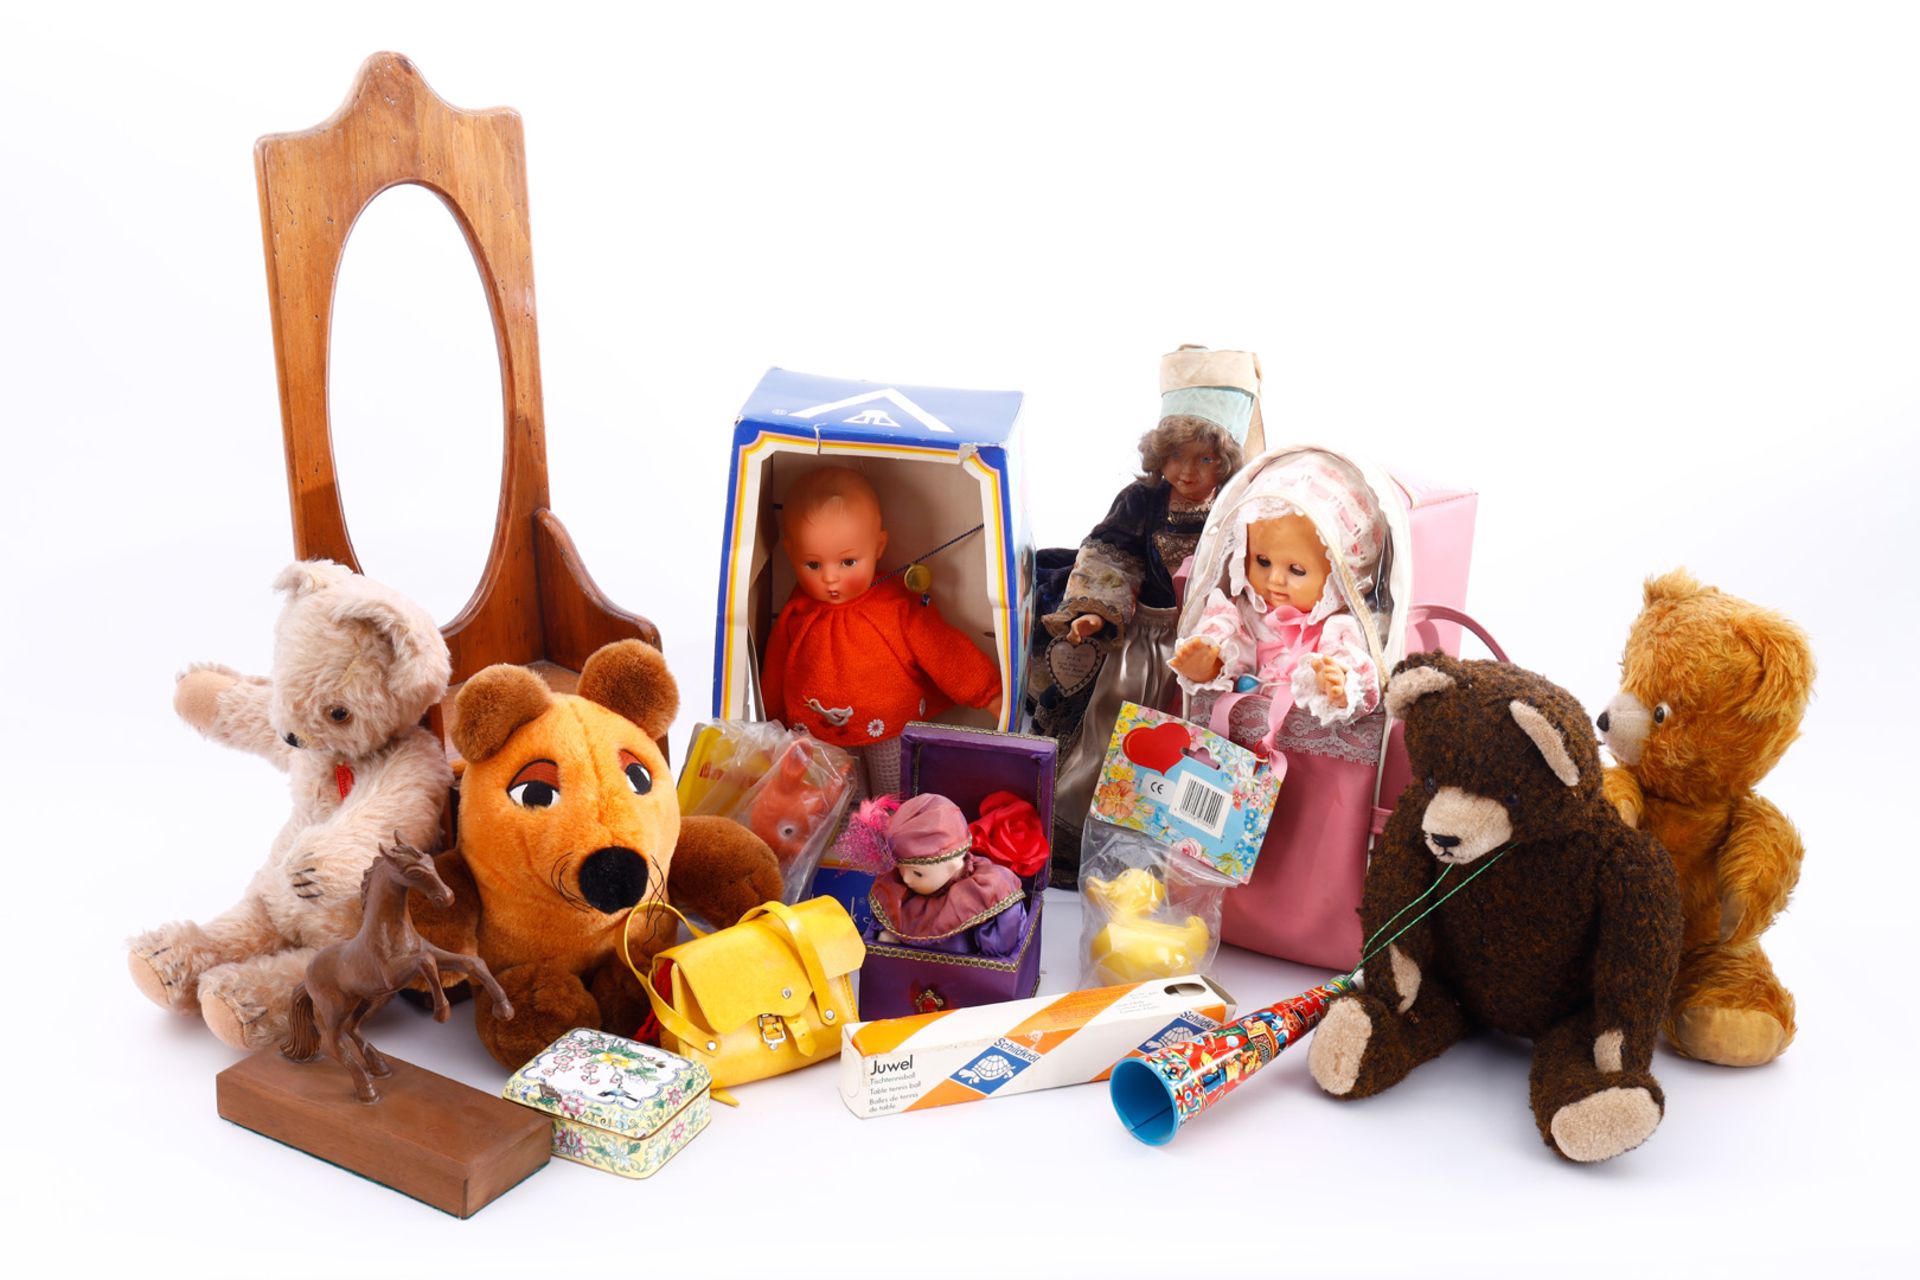 Spielzeugkonv., darunter Bären, Hummel Puppe, französische Celluloid-Puppe etc., teils bespielt,